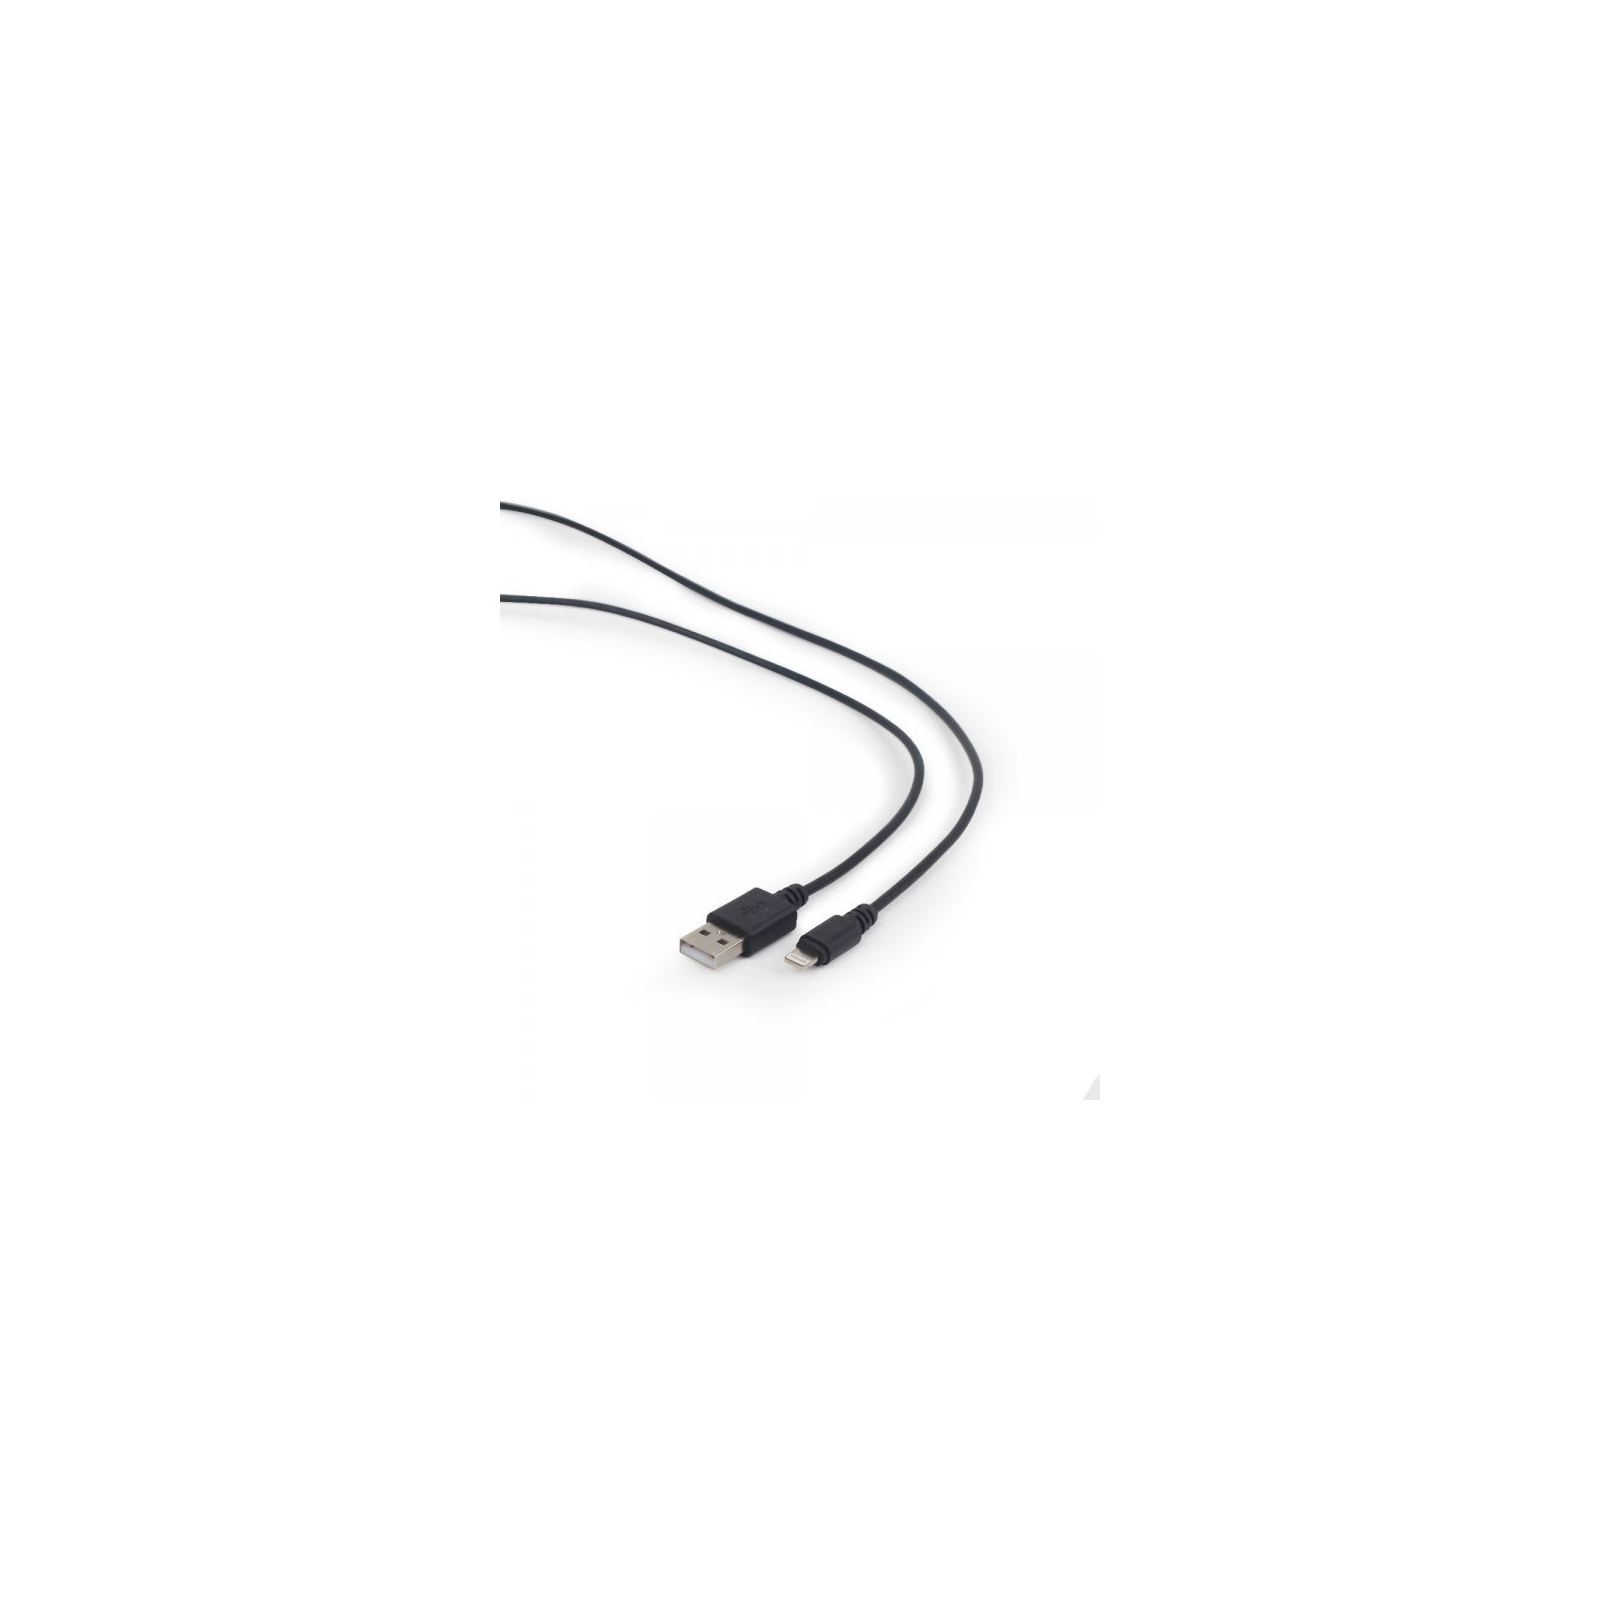 Дата кабель USB 2.0 AM to Lightning 2.0m Cablexpert (CC-USB2-AMLM-2M) изображение 2